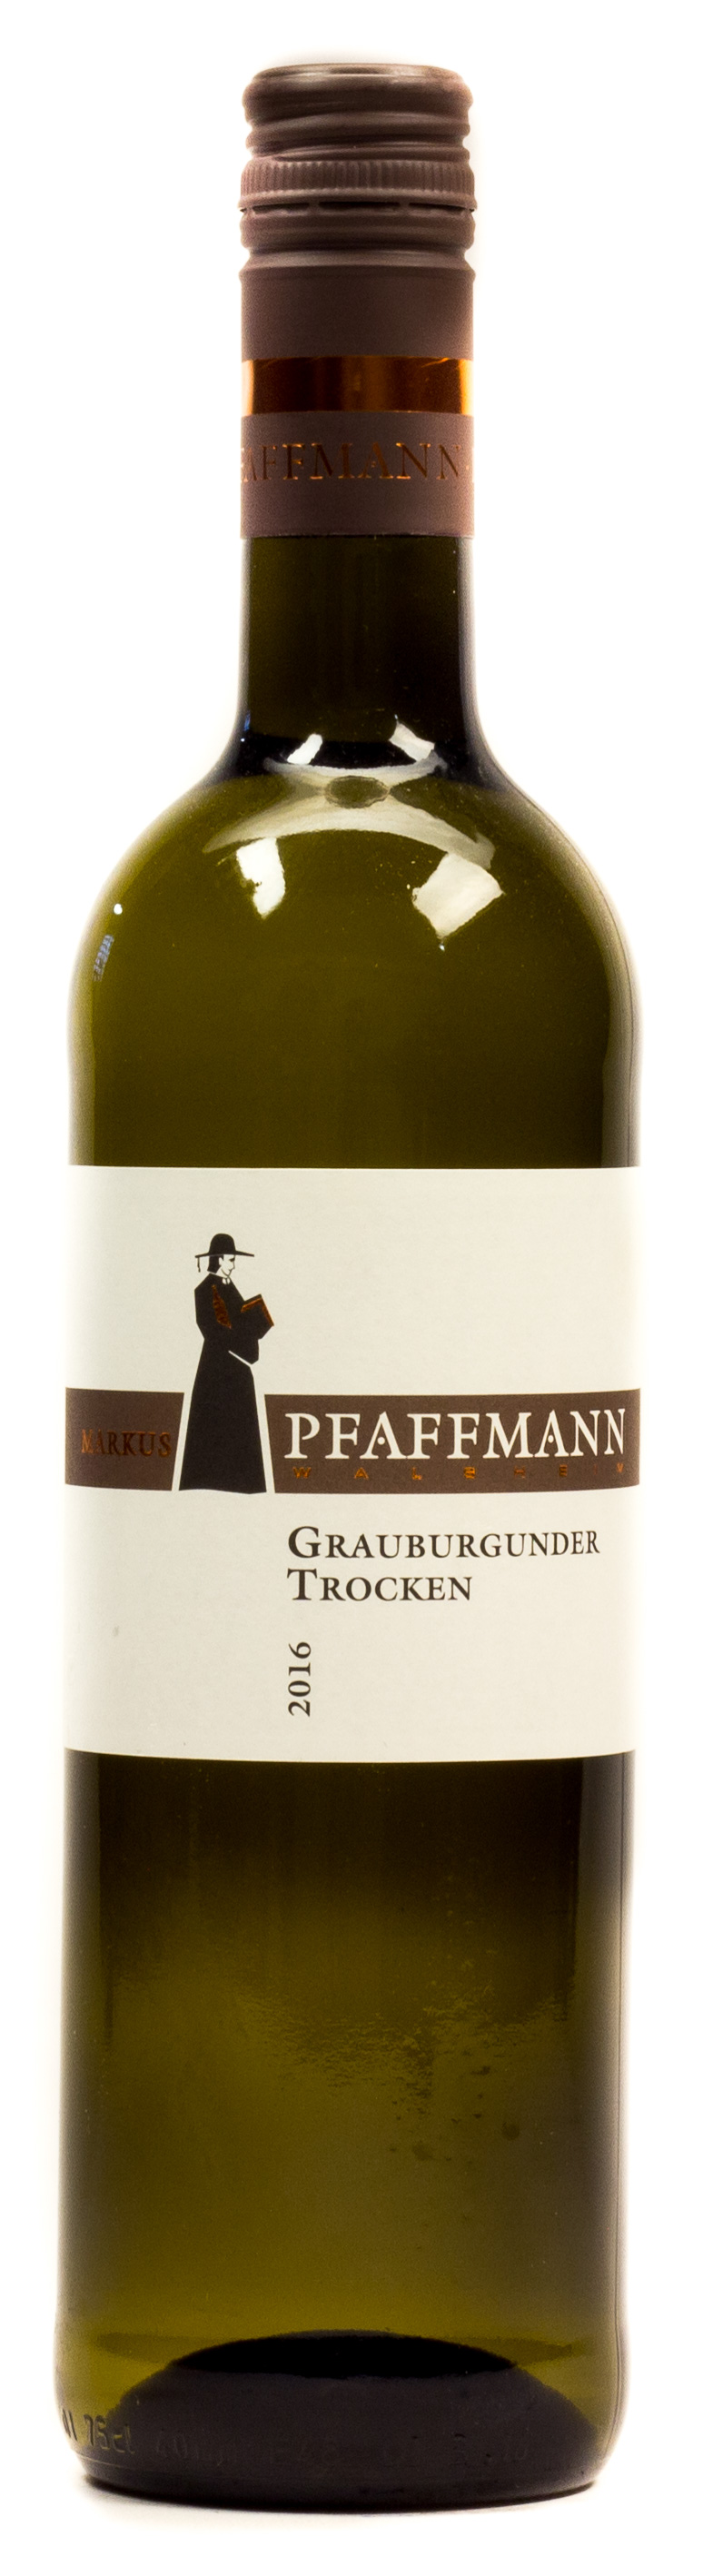 Pfaffmann Grauburgunder Trocken Pfalz 0,75 l